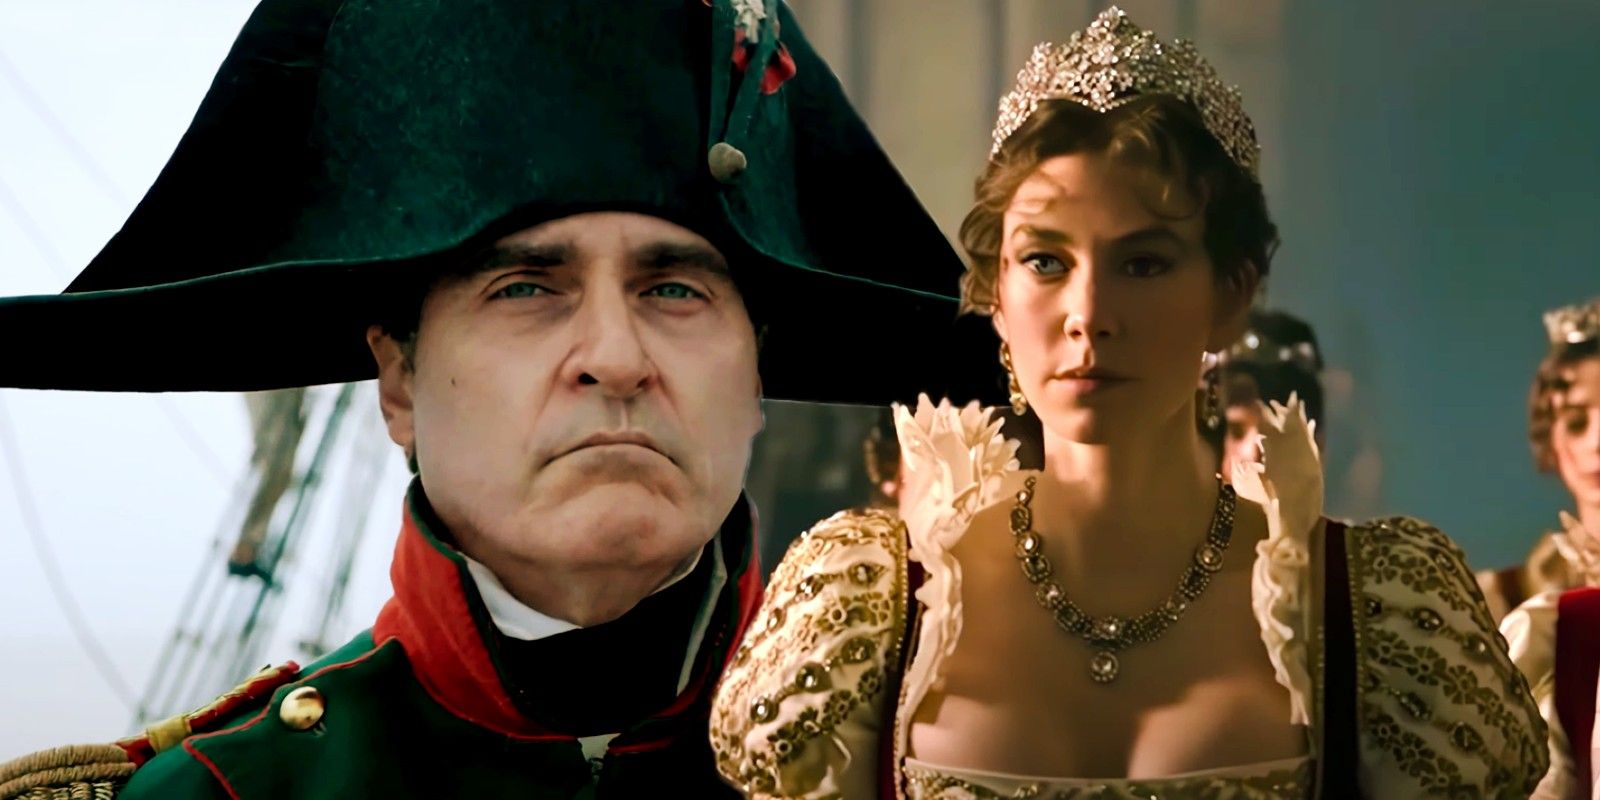 Por qué Napoleón de Ridley Scott está más interesado en Joséphine que en “campos de batalla” o “escenas de sexo”